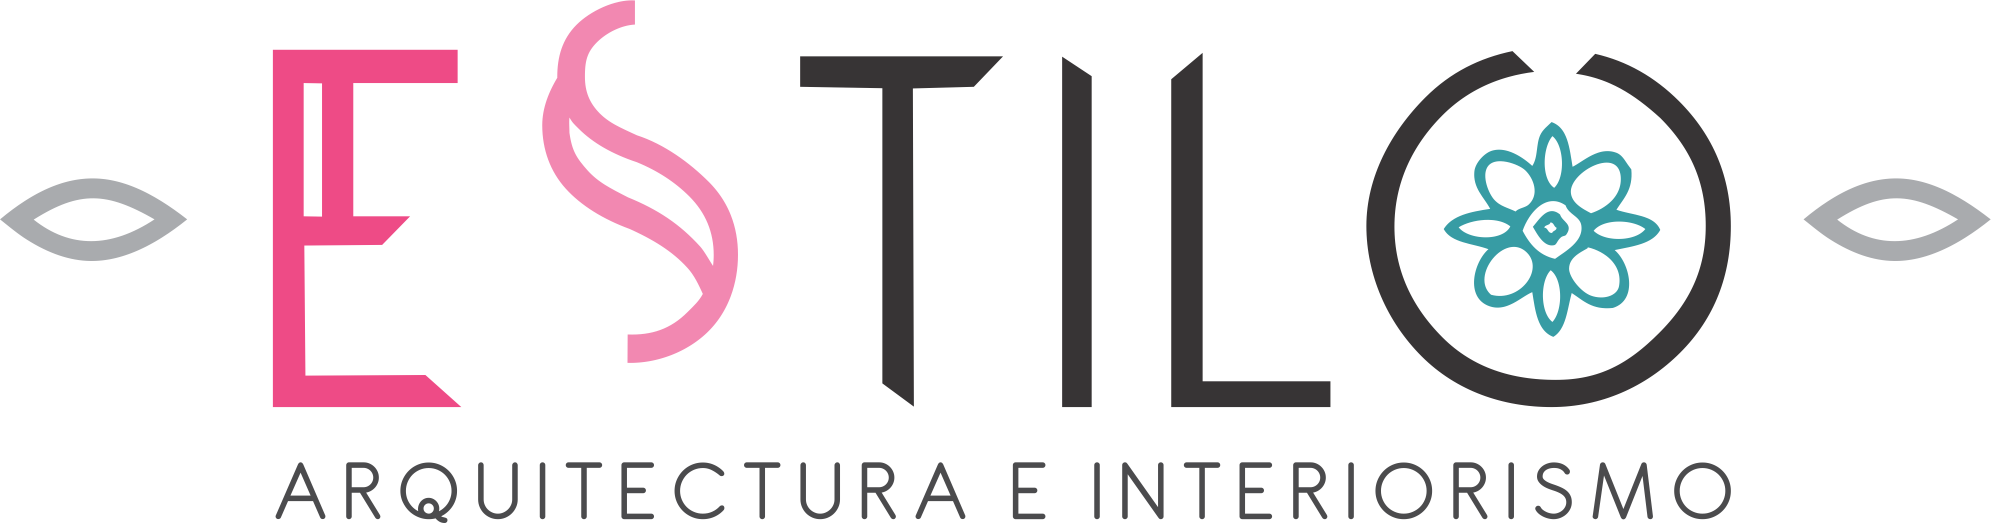 Estilo Arquitectura e Interiorismo Logo